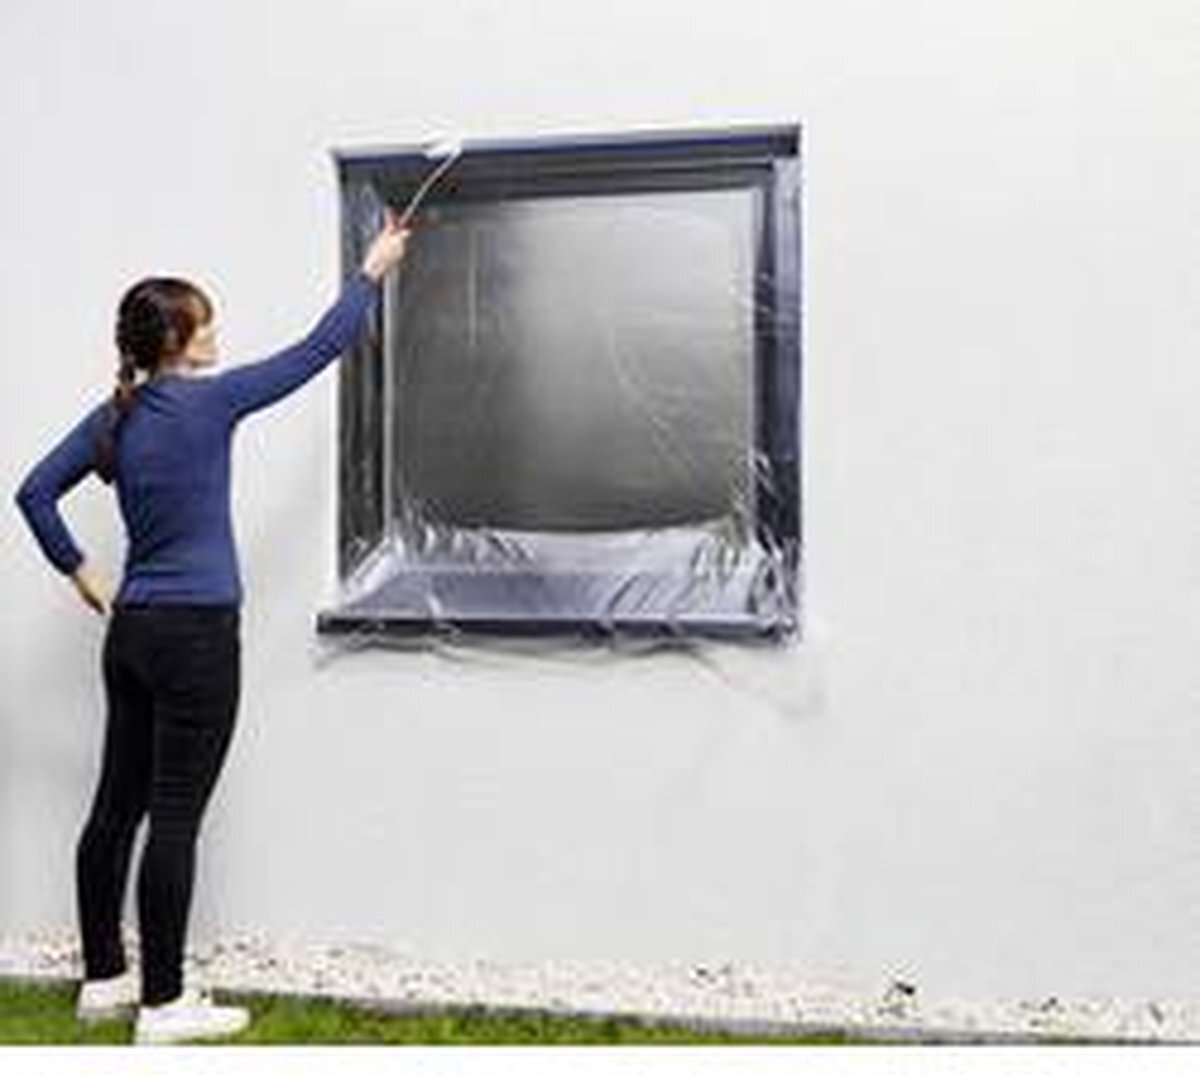 tesa Easy Cover Outdoor L - 2-in-1 schilderfolie met weefseltape - voor het afplakken en afdekken bij schilderwerk buitenshuis - schildertape met geïntegreerde folie - 20 m x 1,4 cm